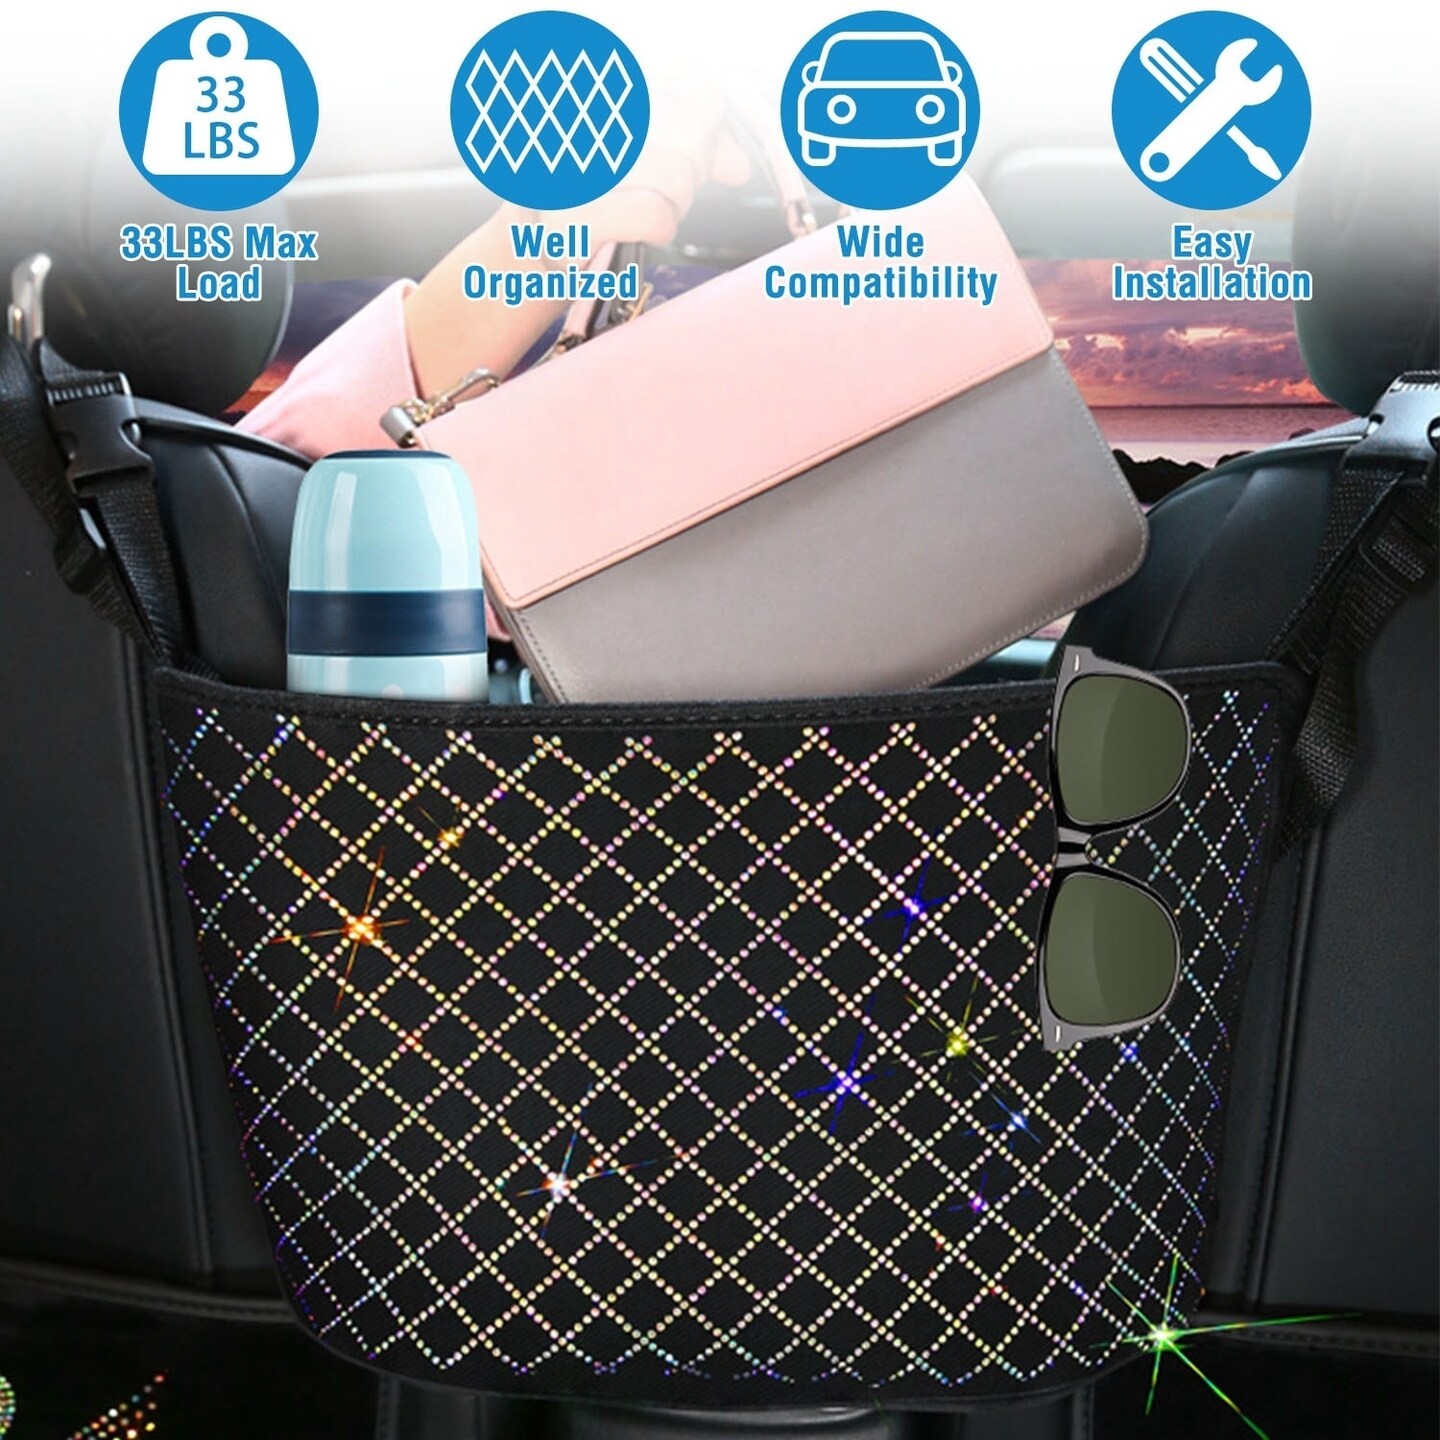 Space-Saving Net Pocket Car Handbag Holder - Inspire Uplift